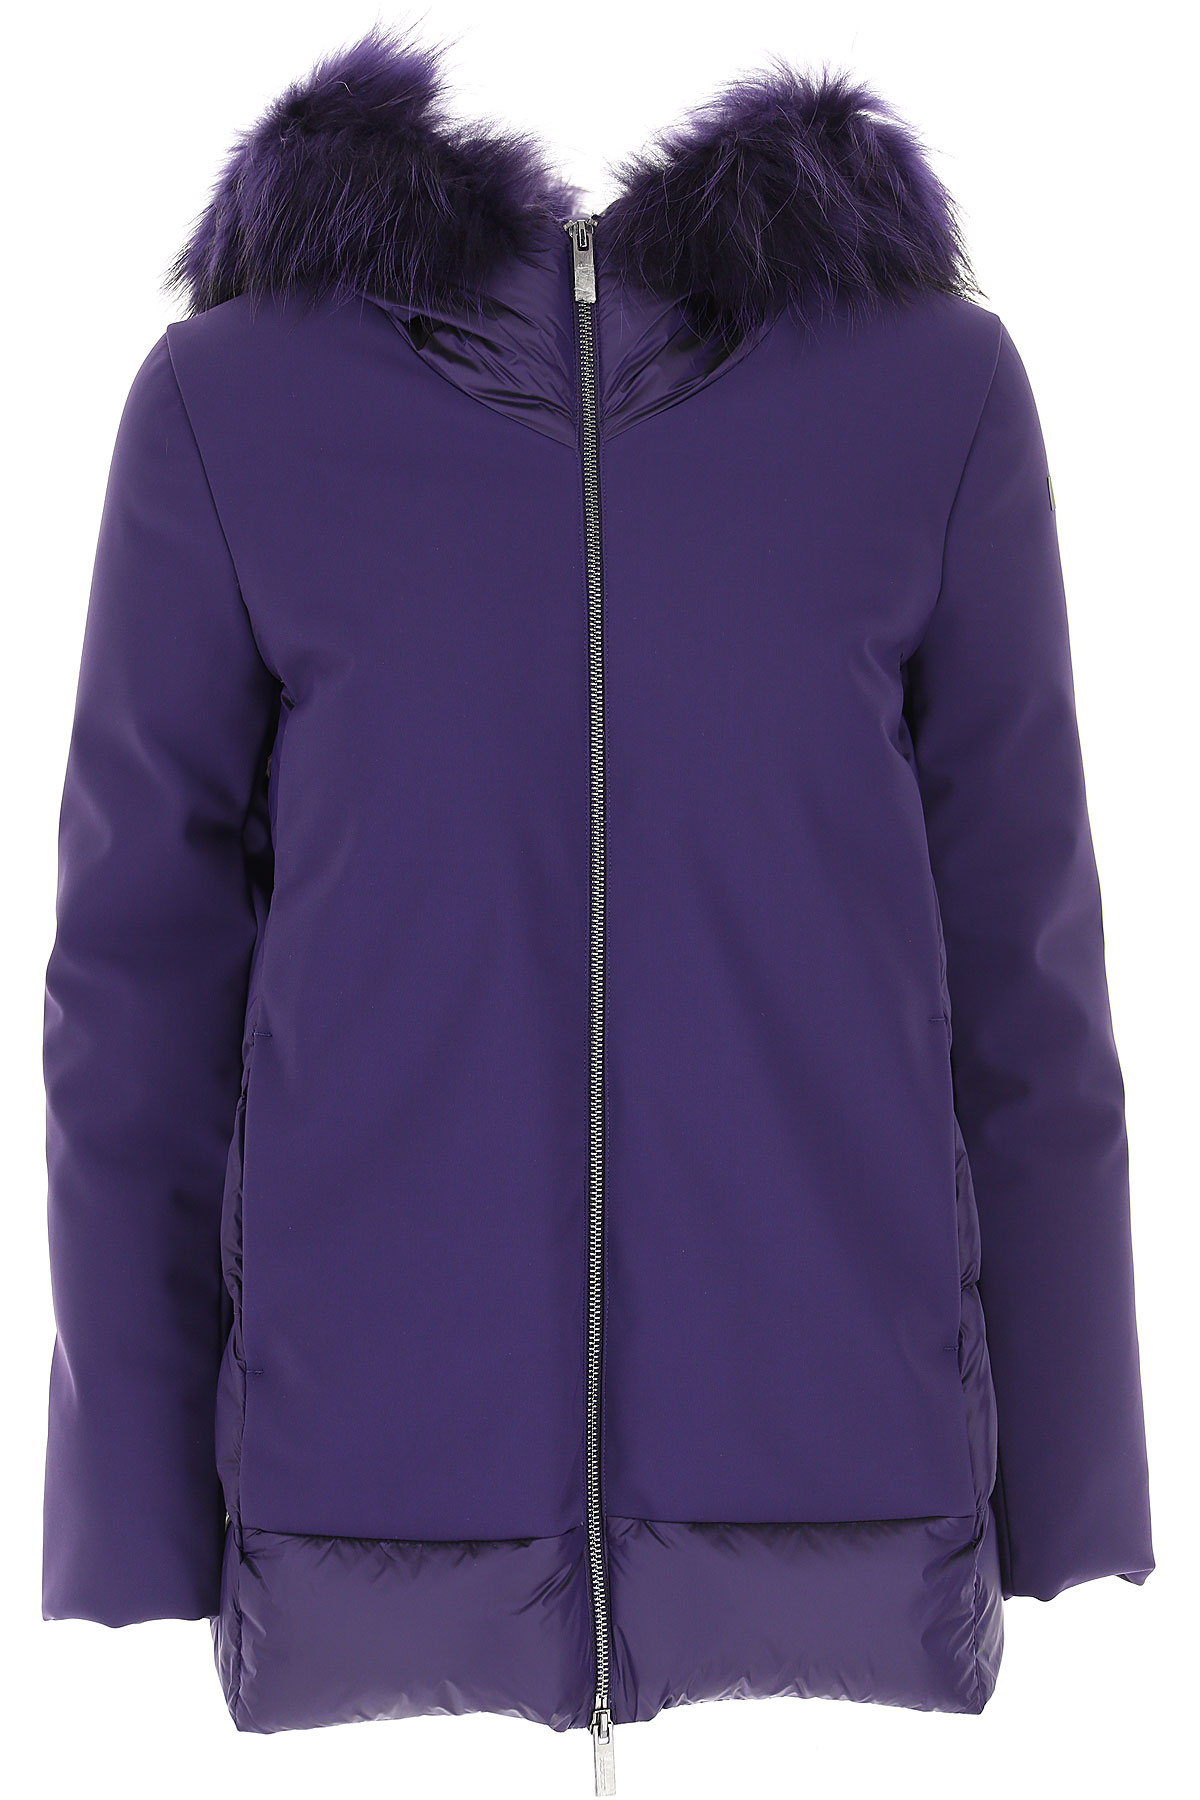 RRD Jacke für Damen Günstig im Sale, Aubergine violett, Polyamid, 2017, 40 44 46 M